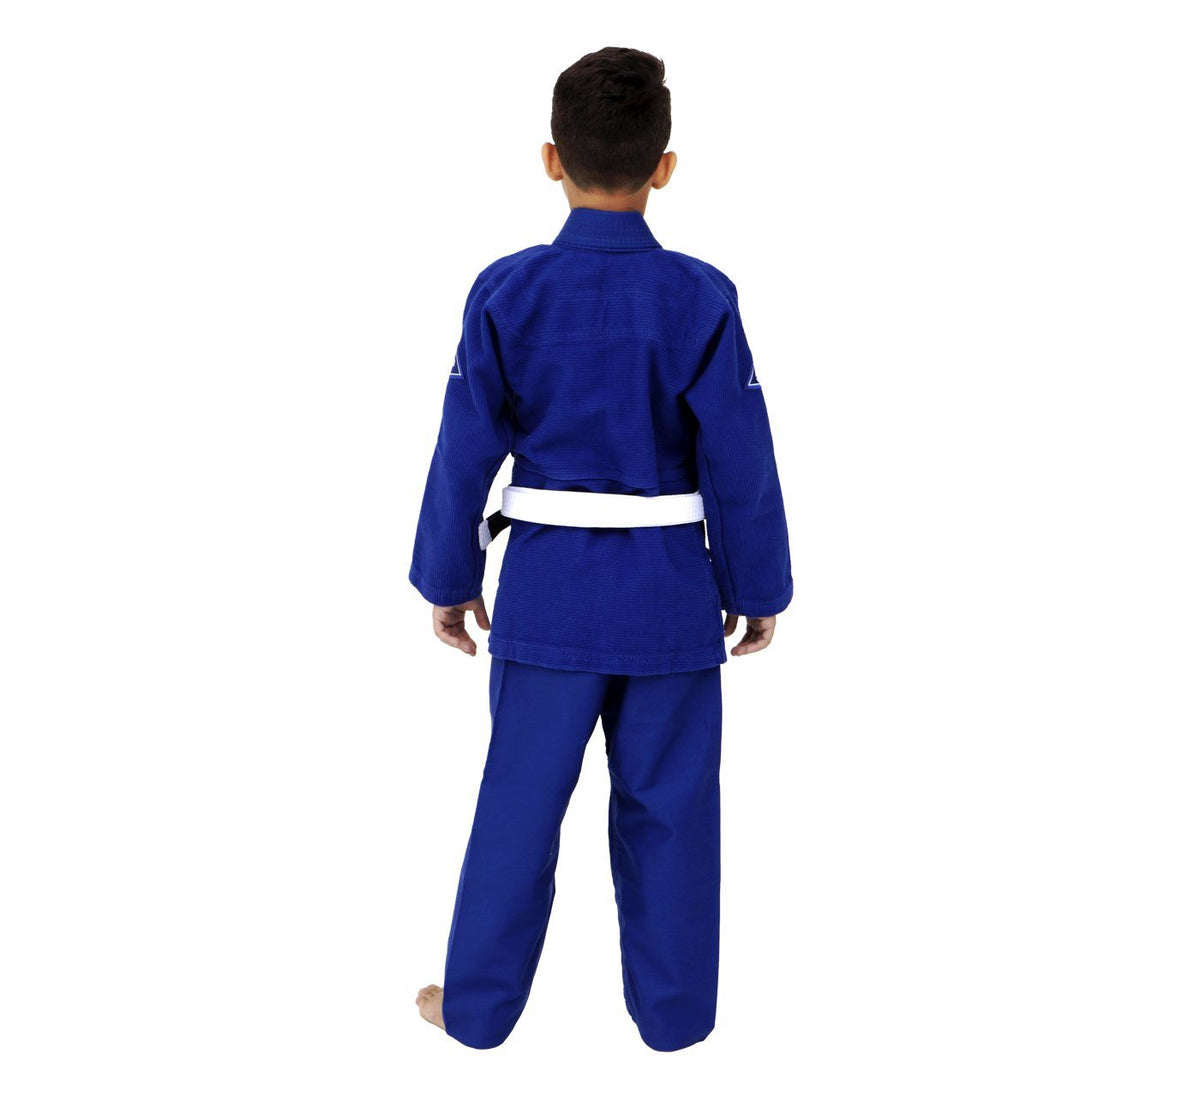 PRO EVOLUTION KIDS Jiu-Jitsu Gi (Blue)